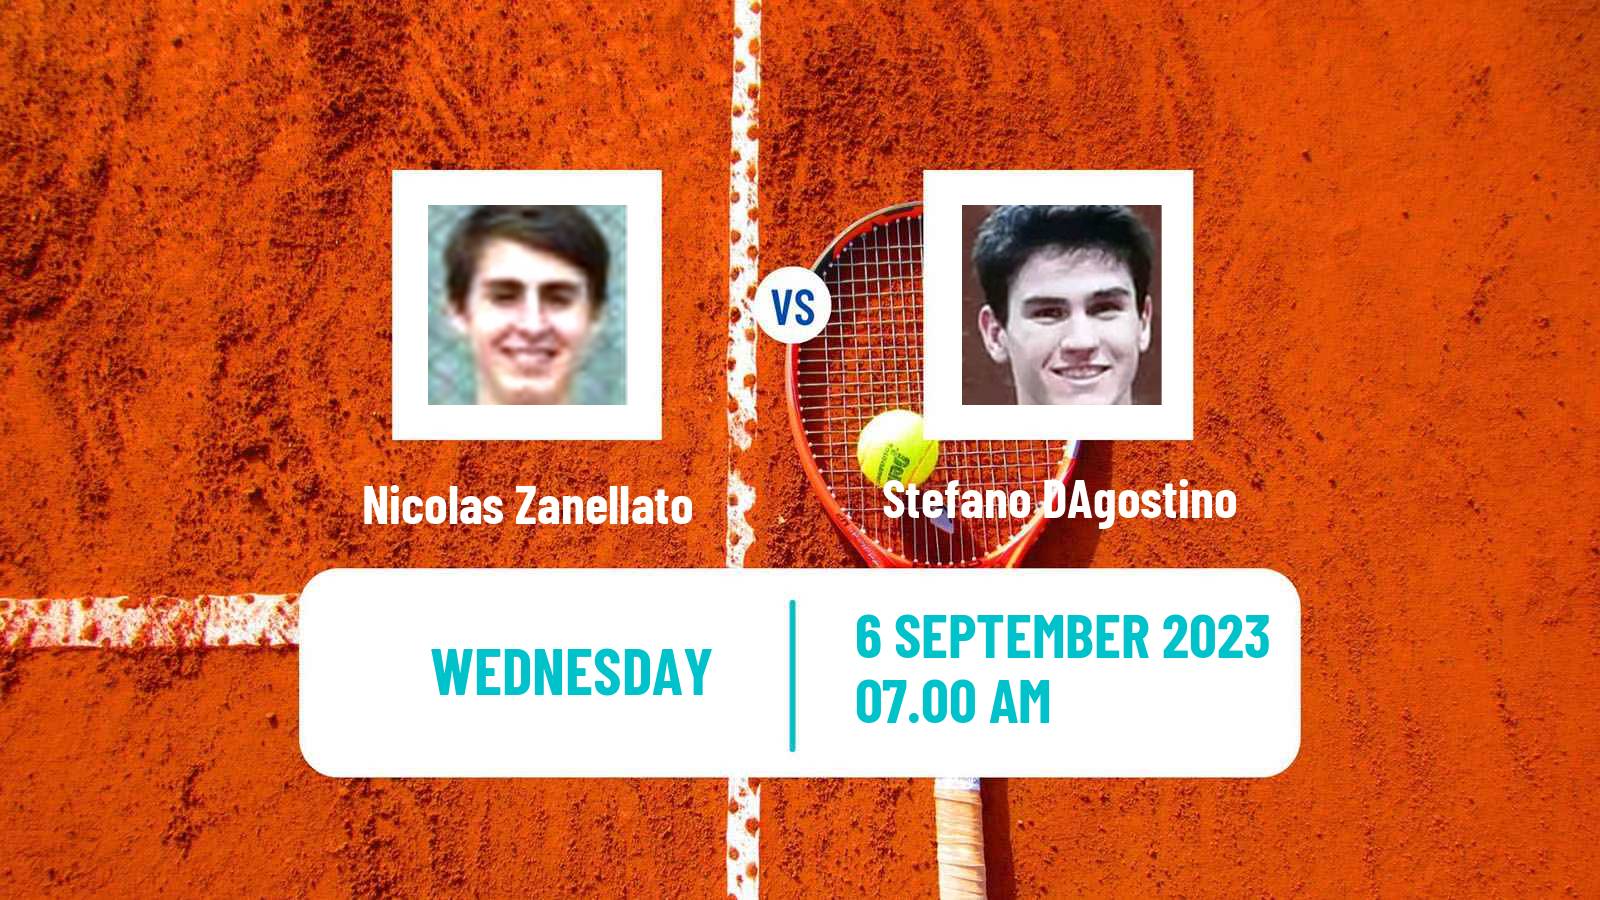 Tennis ITF M25 MarIBOr 2 Men Nicolas Zanellato - Stefano DAgostino